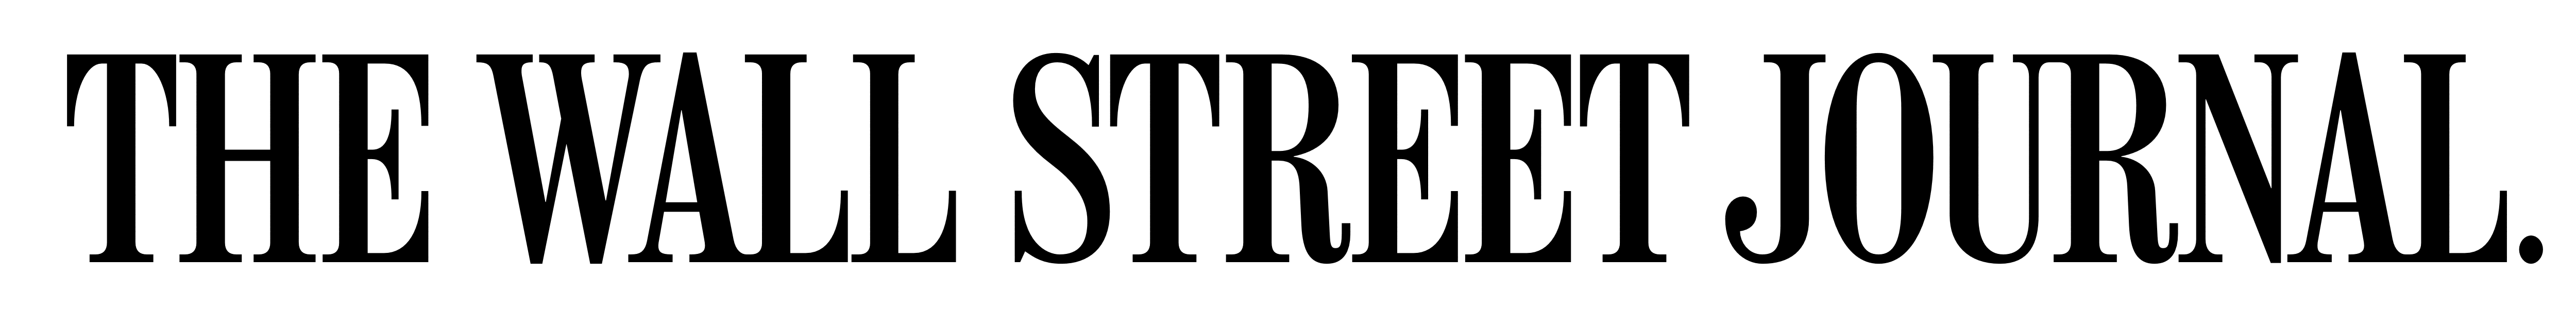 The Wall Street Journal. Logo